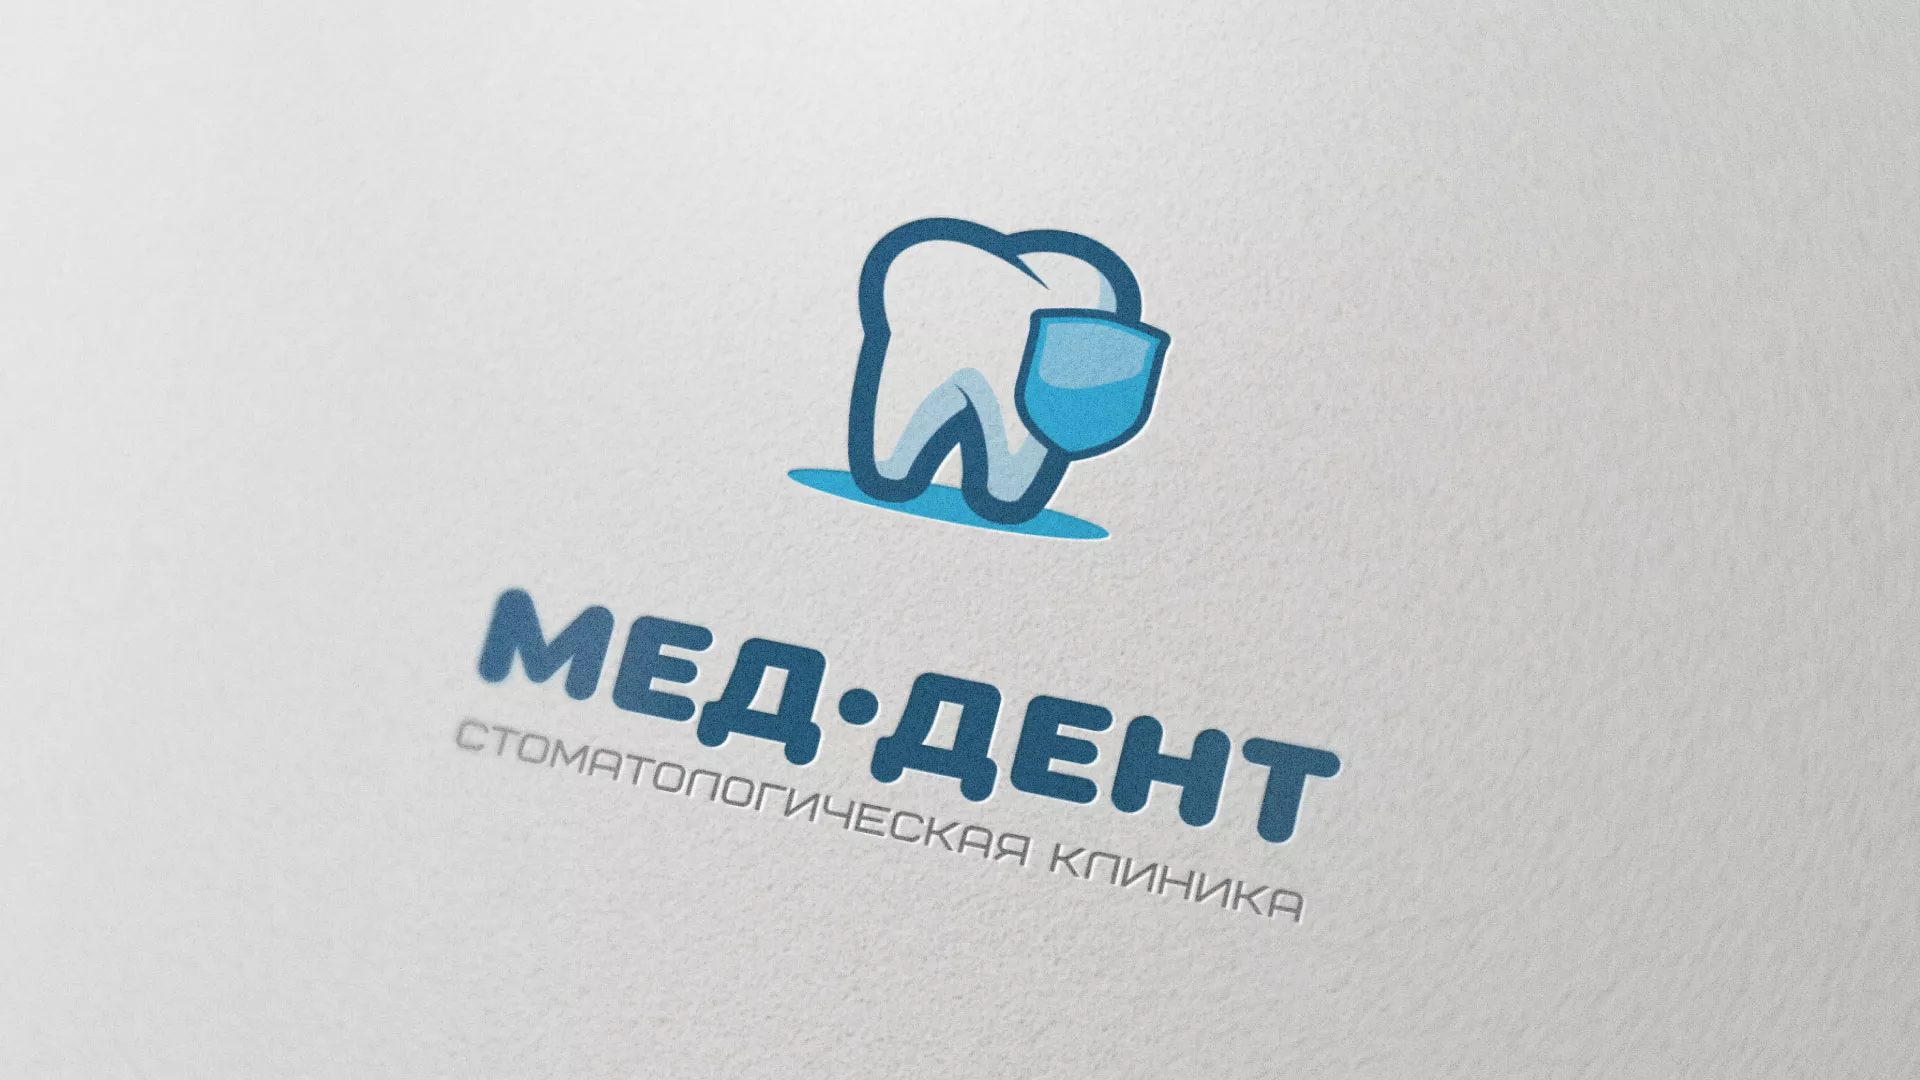 Разработка логотипа стоматологической клиники «МЕД-ДЕНТ» в Кирове